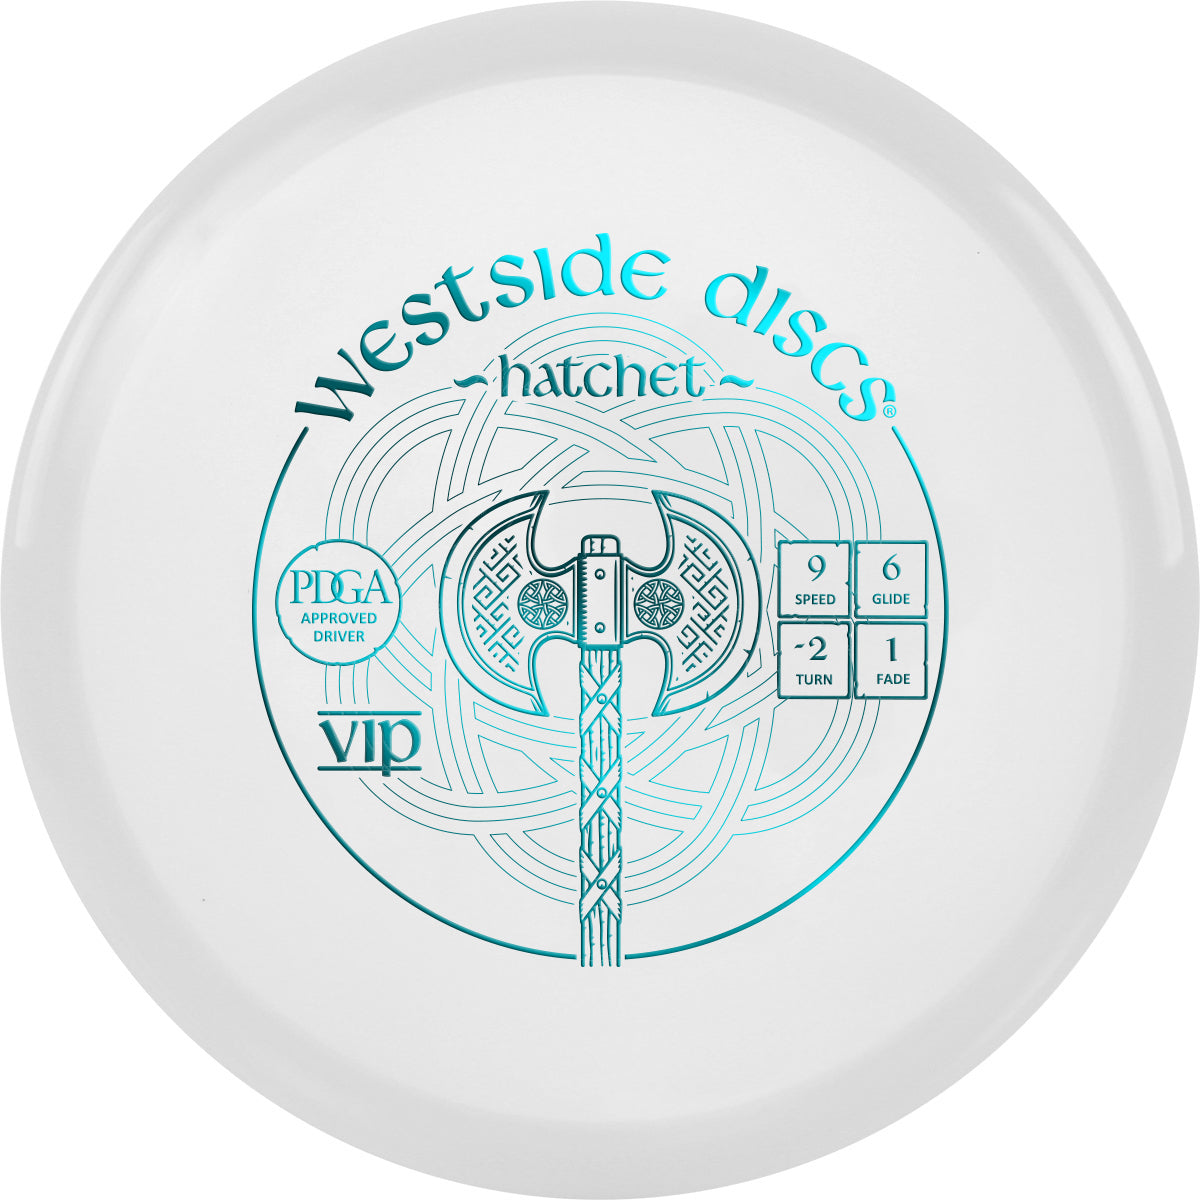 Westside Discs VIP Hatchet Disc